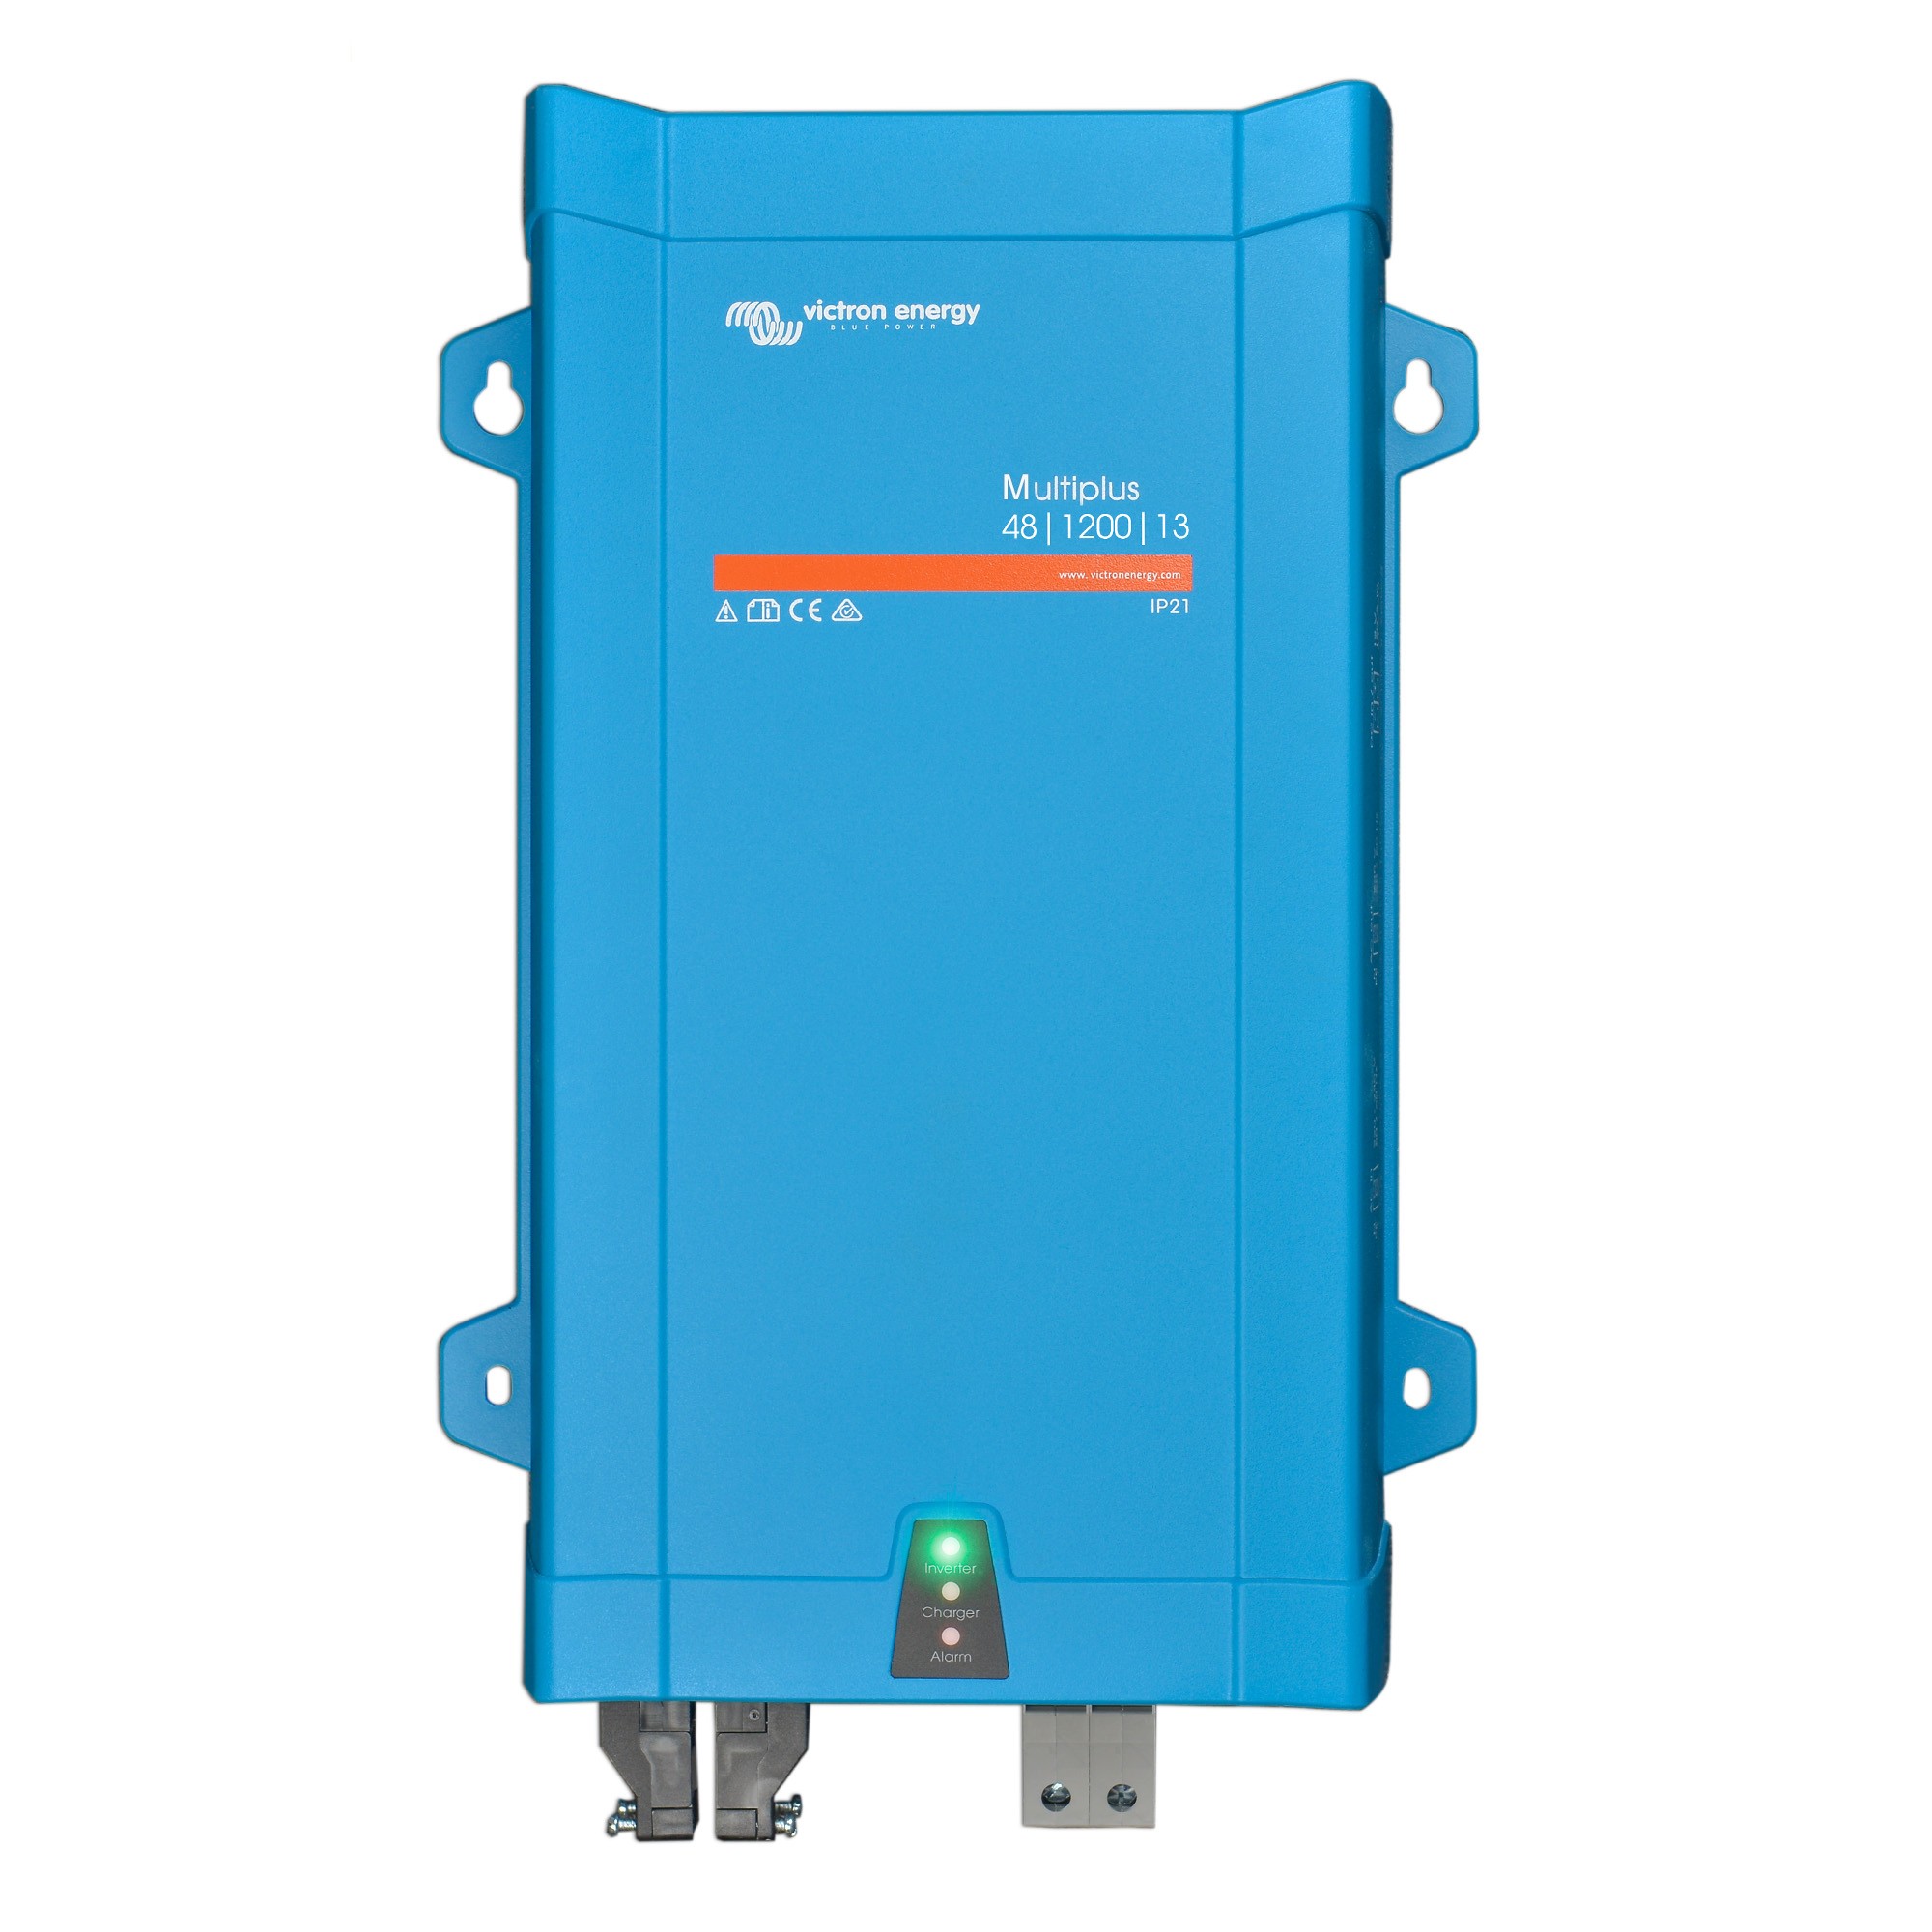 Inverter/charger MultiPlus 48/1200/13-16 230 V VE.Bus Victron Energy